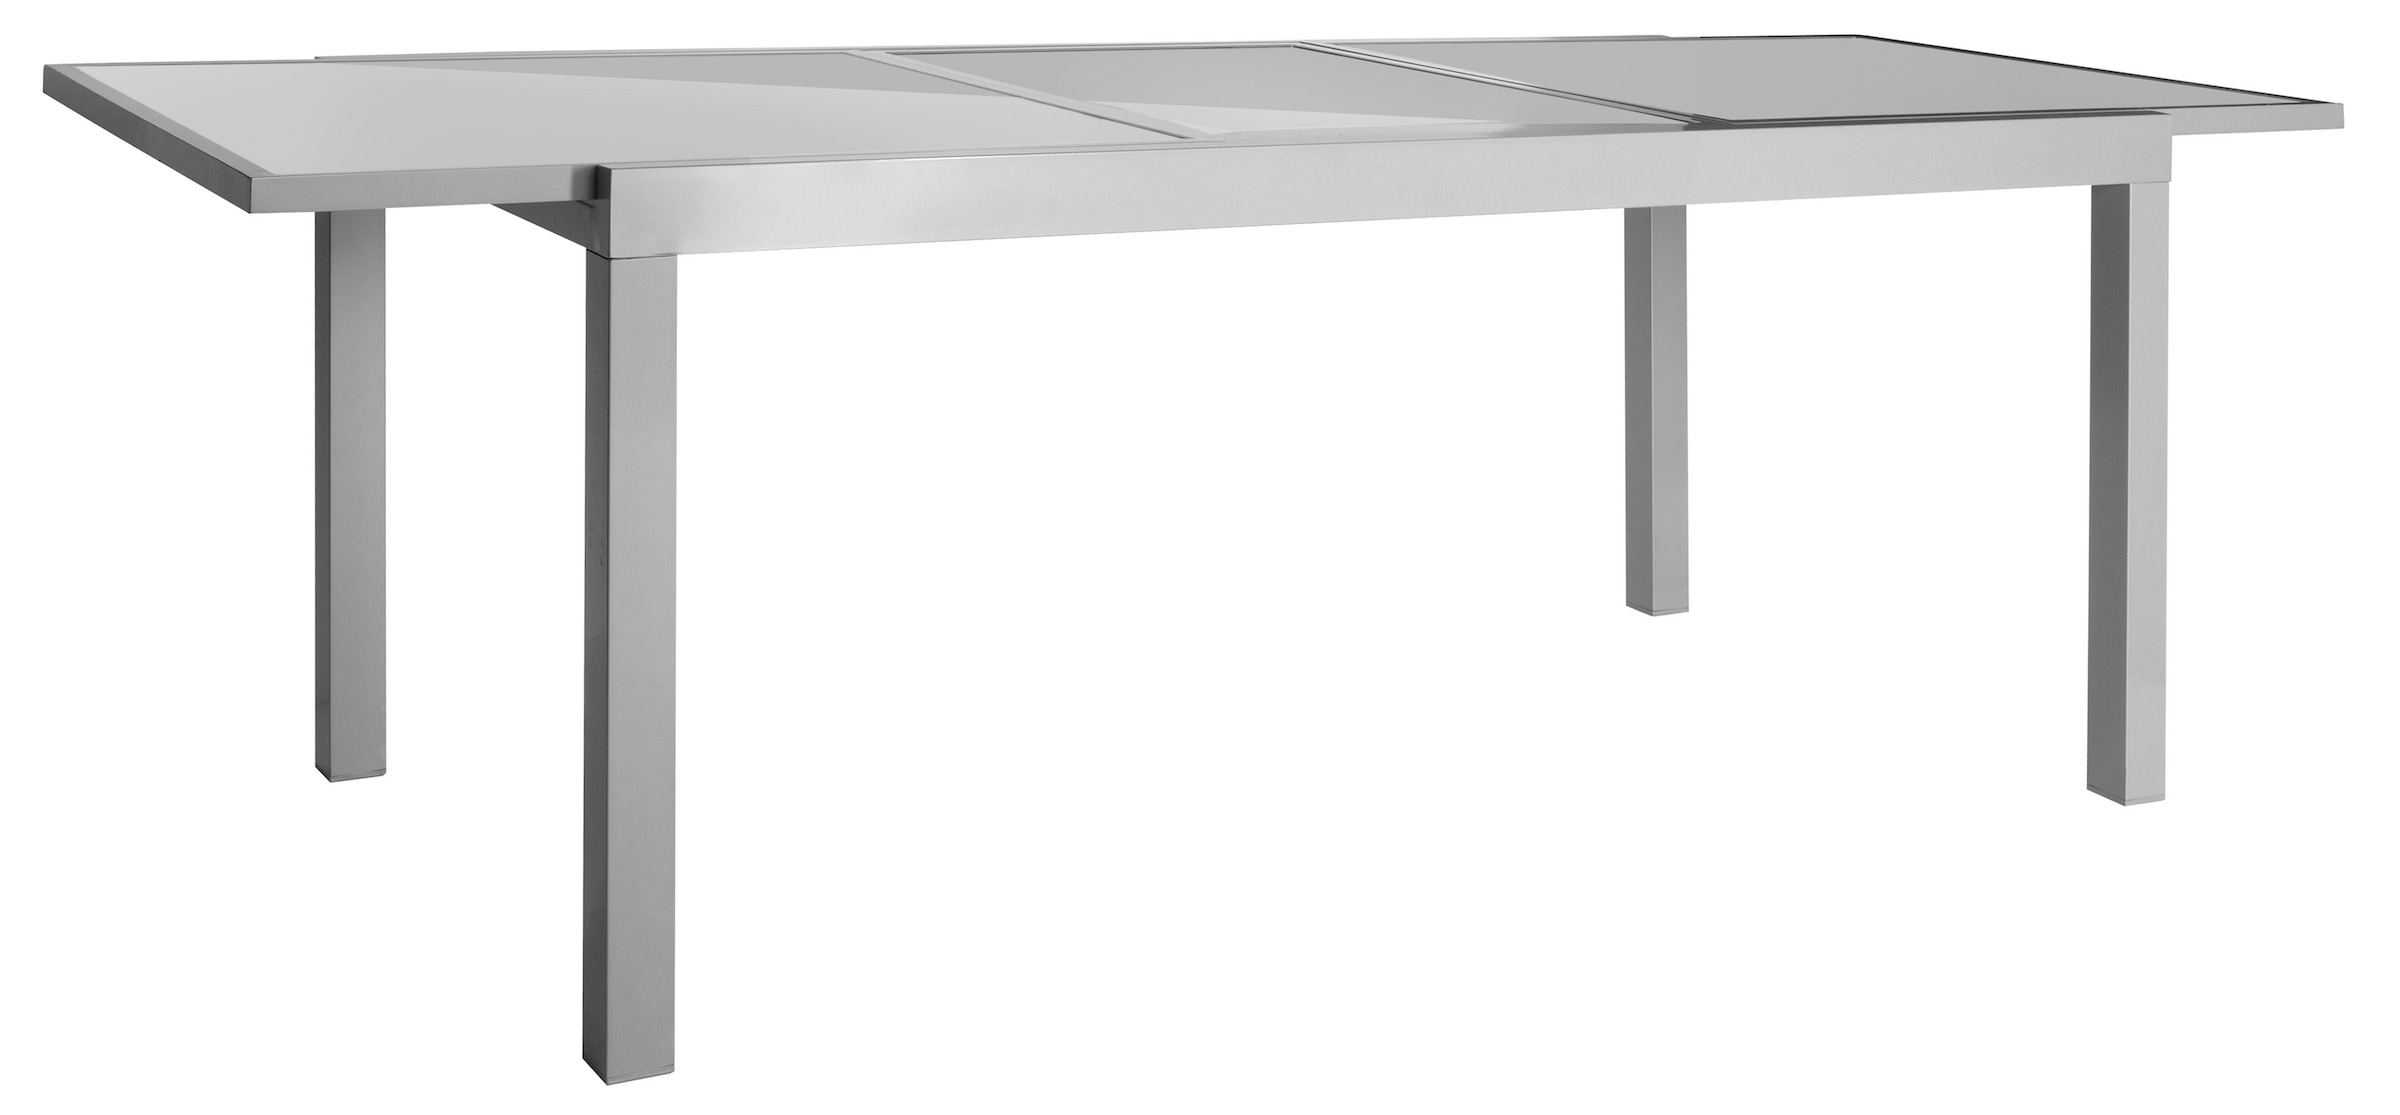 MERXX Garten-Essgruppe »Amalfi«, (5 tlg.), 4 Klappsessel, Tisch ausziehbar 90x120-180 cm, Alu/Textil